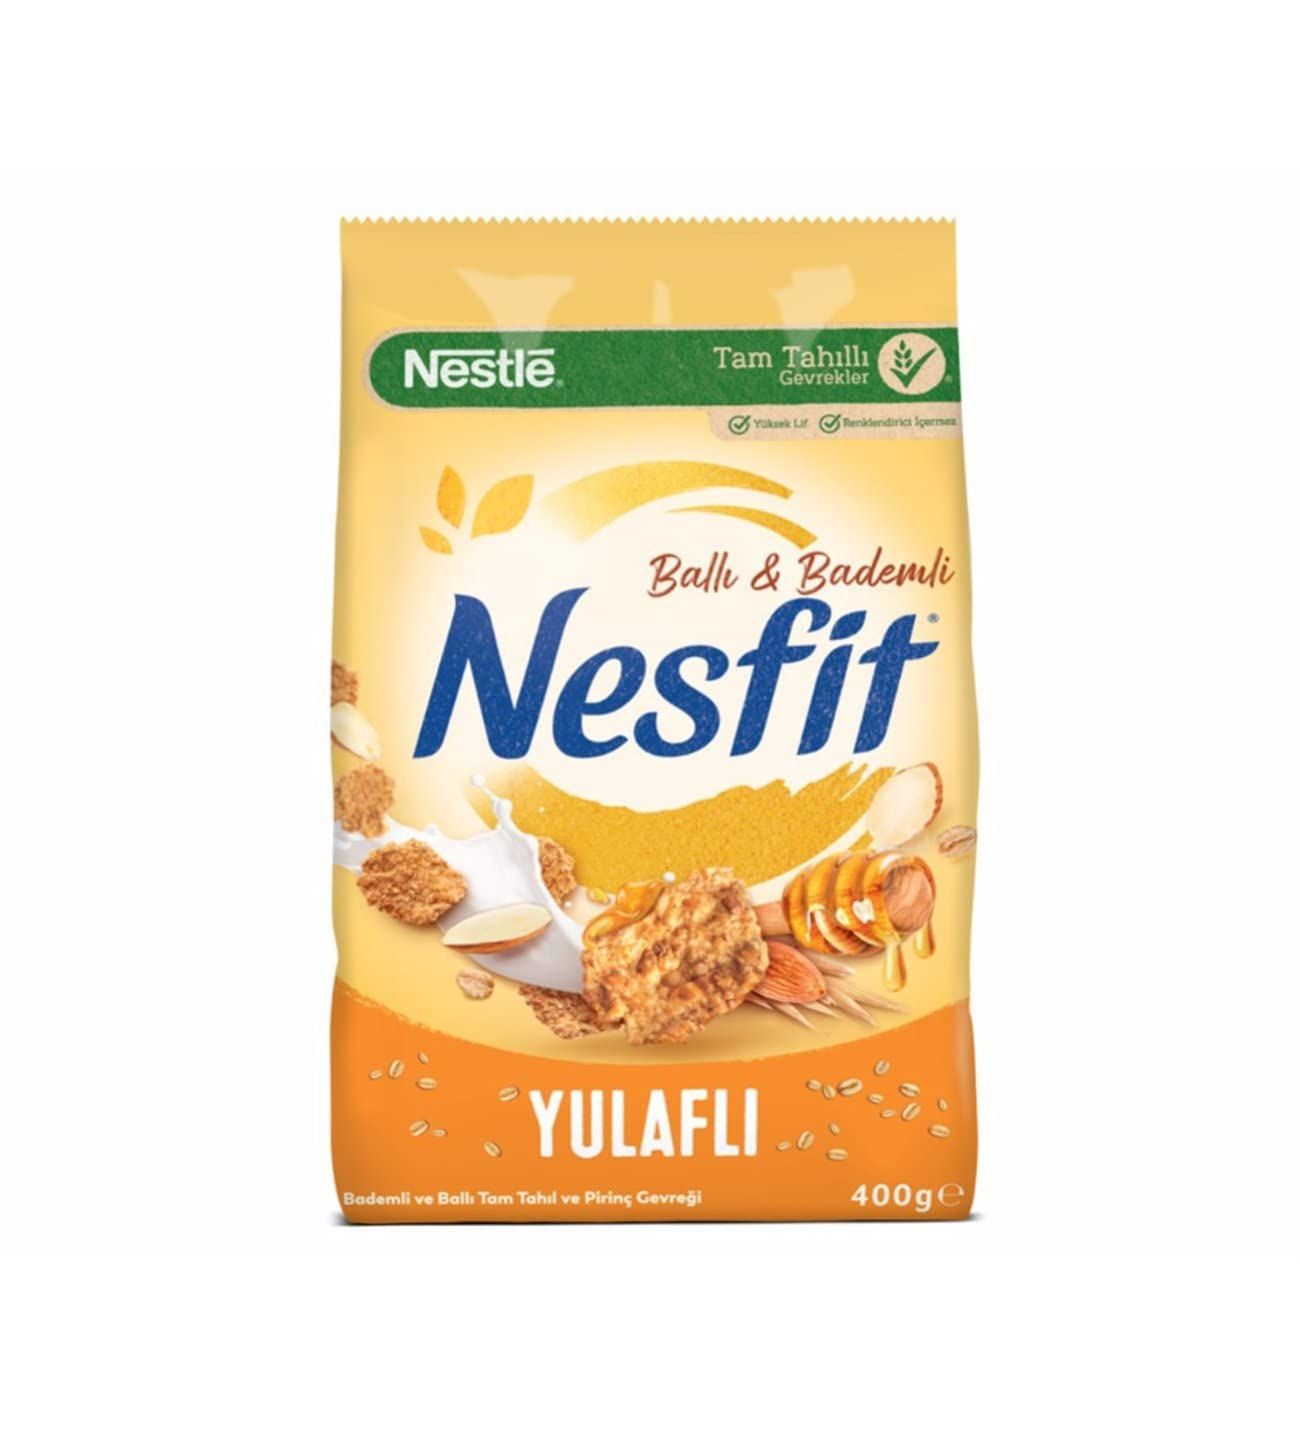 Nestle Nesfit Ballı Bademli 400gr